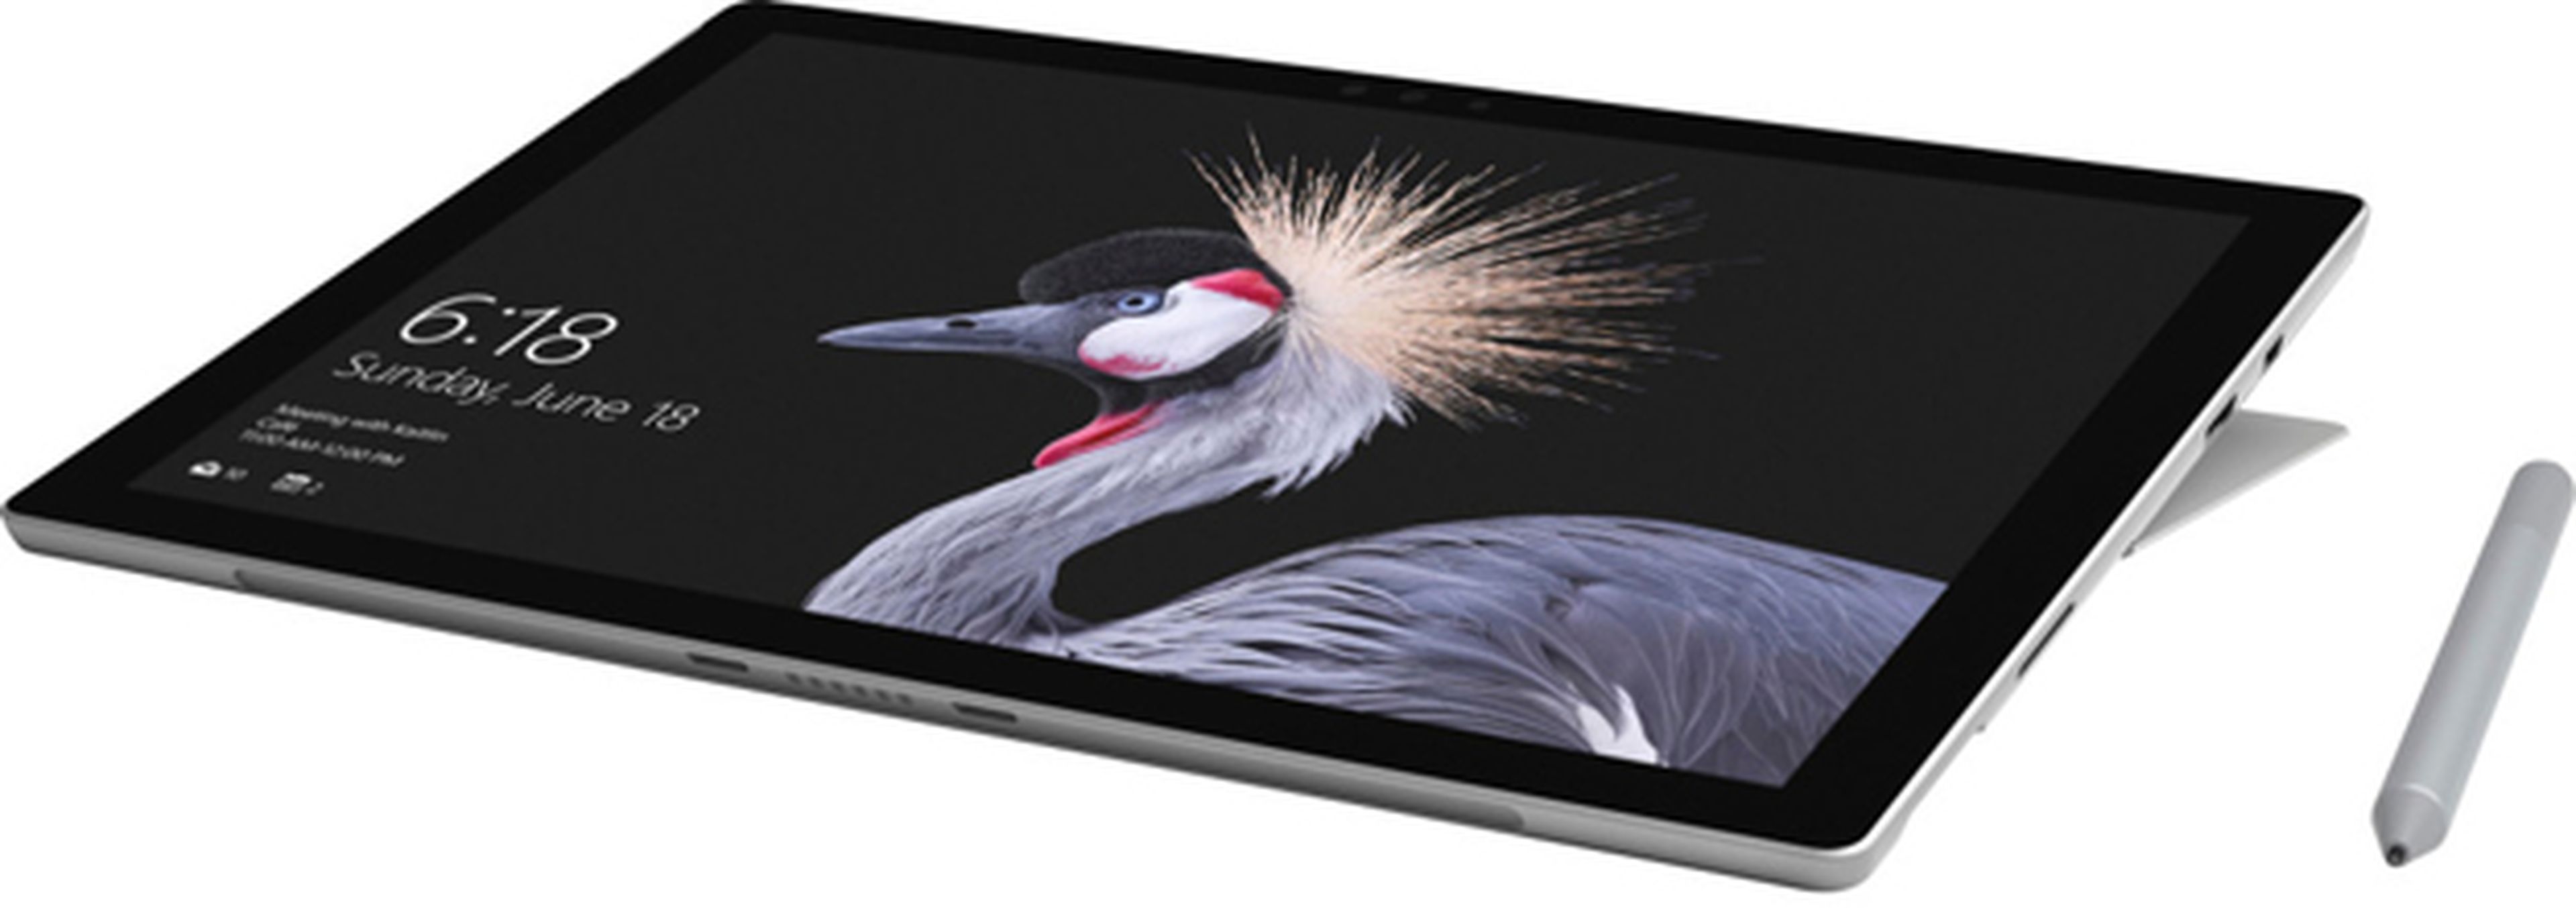 Todas las novedades que trae la nueva Surface Pro 4